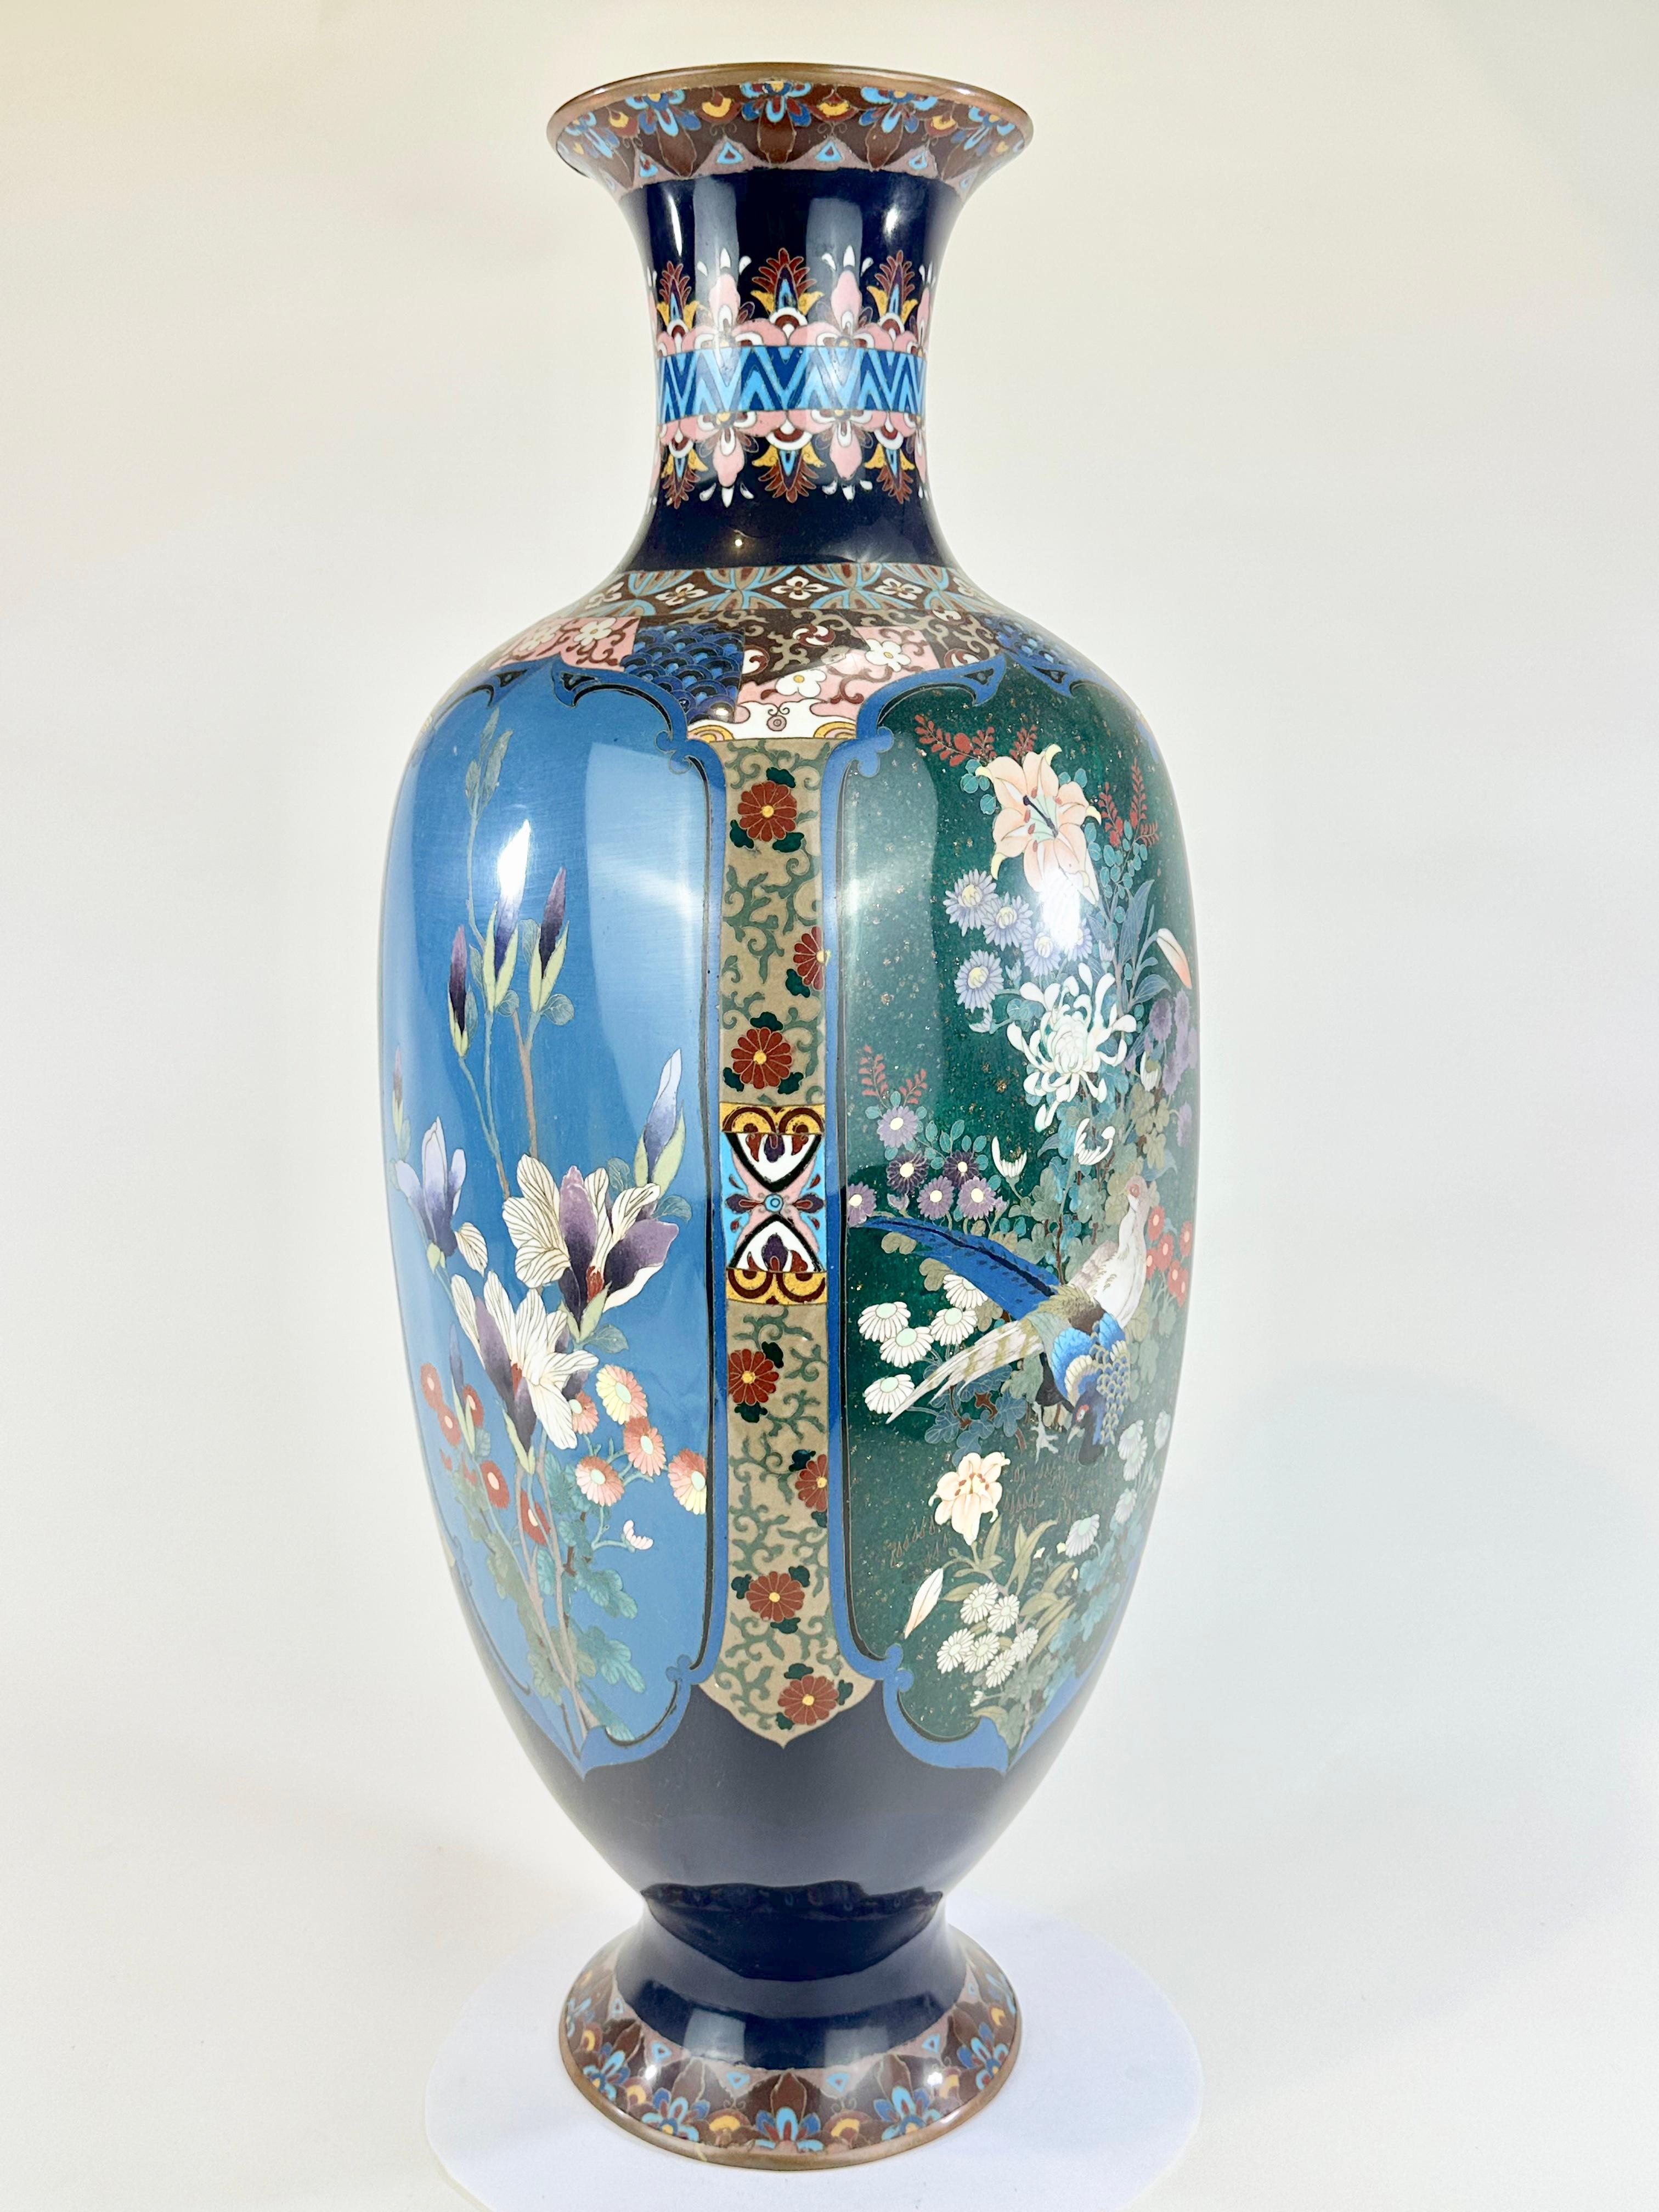 Disponible auprès de Shogun Art Gallery à Portland, Oregon, spécialisée depuis plus de 40 ans dans les arts et antiquités asiatiques.

Il s'agit d'un vase Cloisonné orné unique de l'ère Meiji (vers 1890) au Japon. Fabriqué en cuivre, alliages de